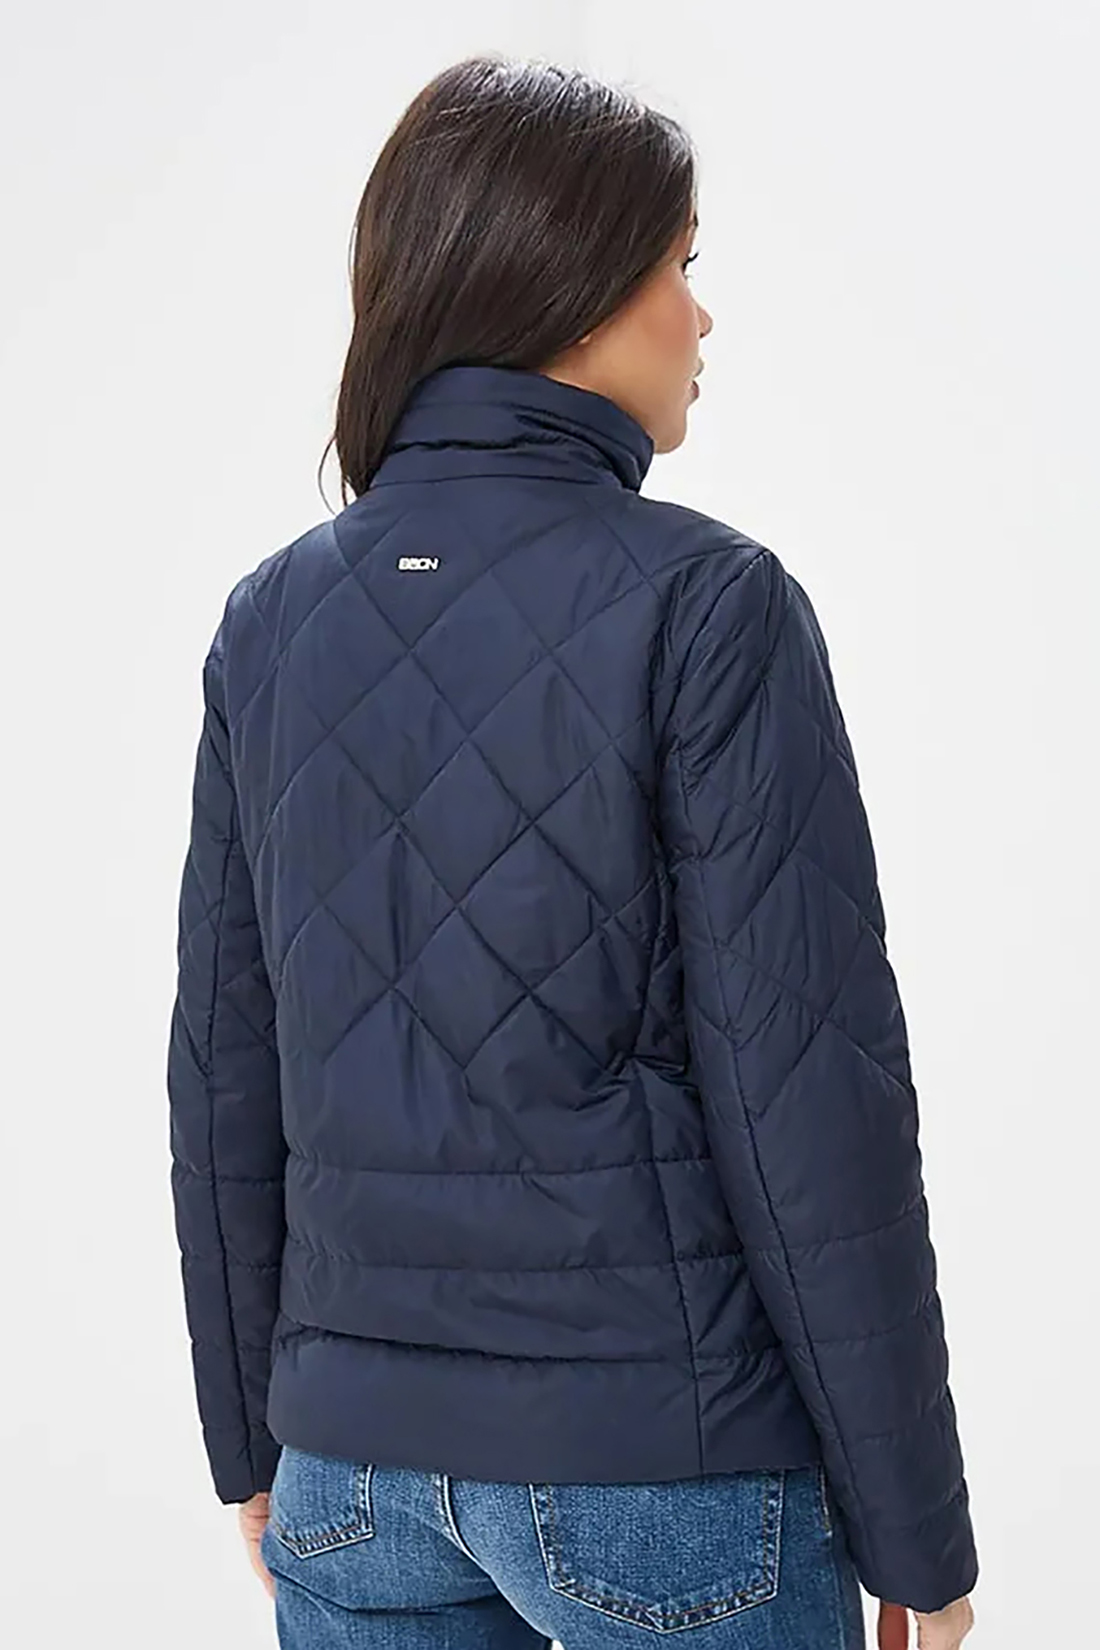 Стёганая куртка с крупной фурнитурой (арт. baon B039015), размер L, цвет синий Стёганая куртка с крупной фурнитурой (арт. baon B039015) - фото 2